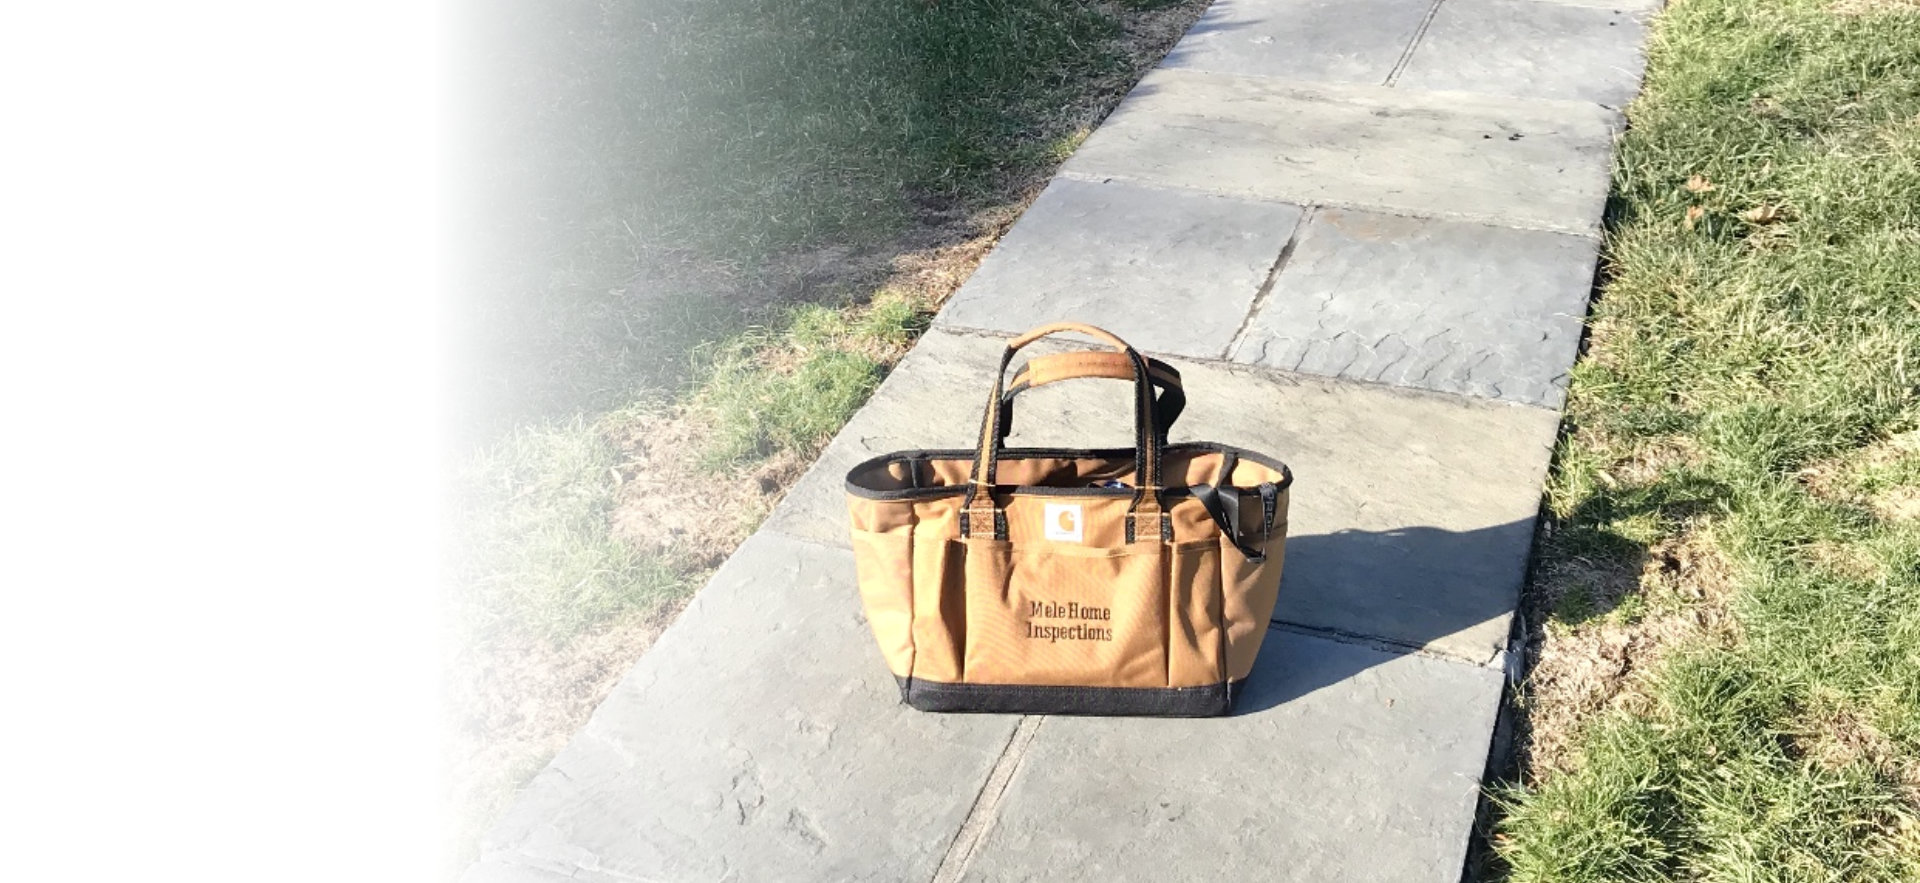 Tool bag outside the house